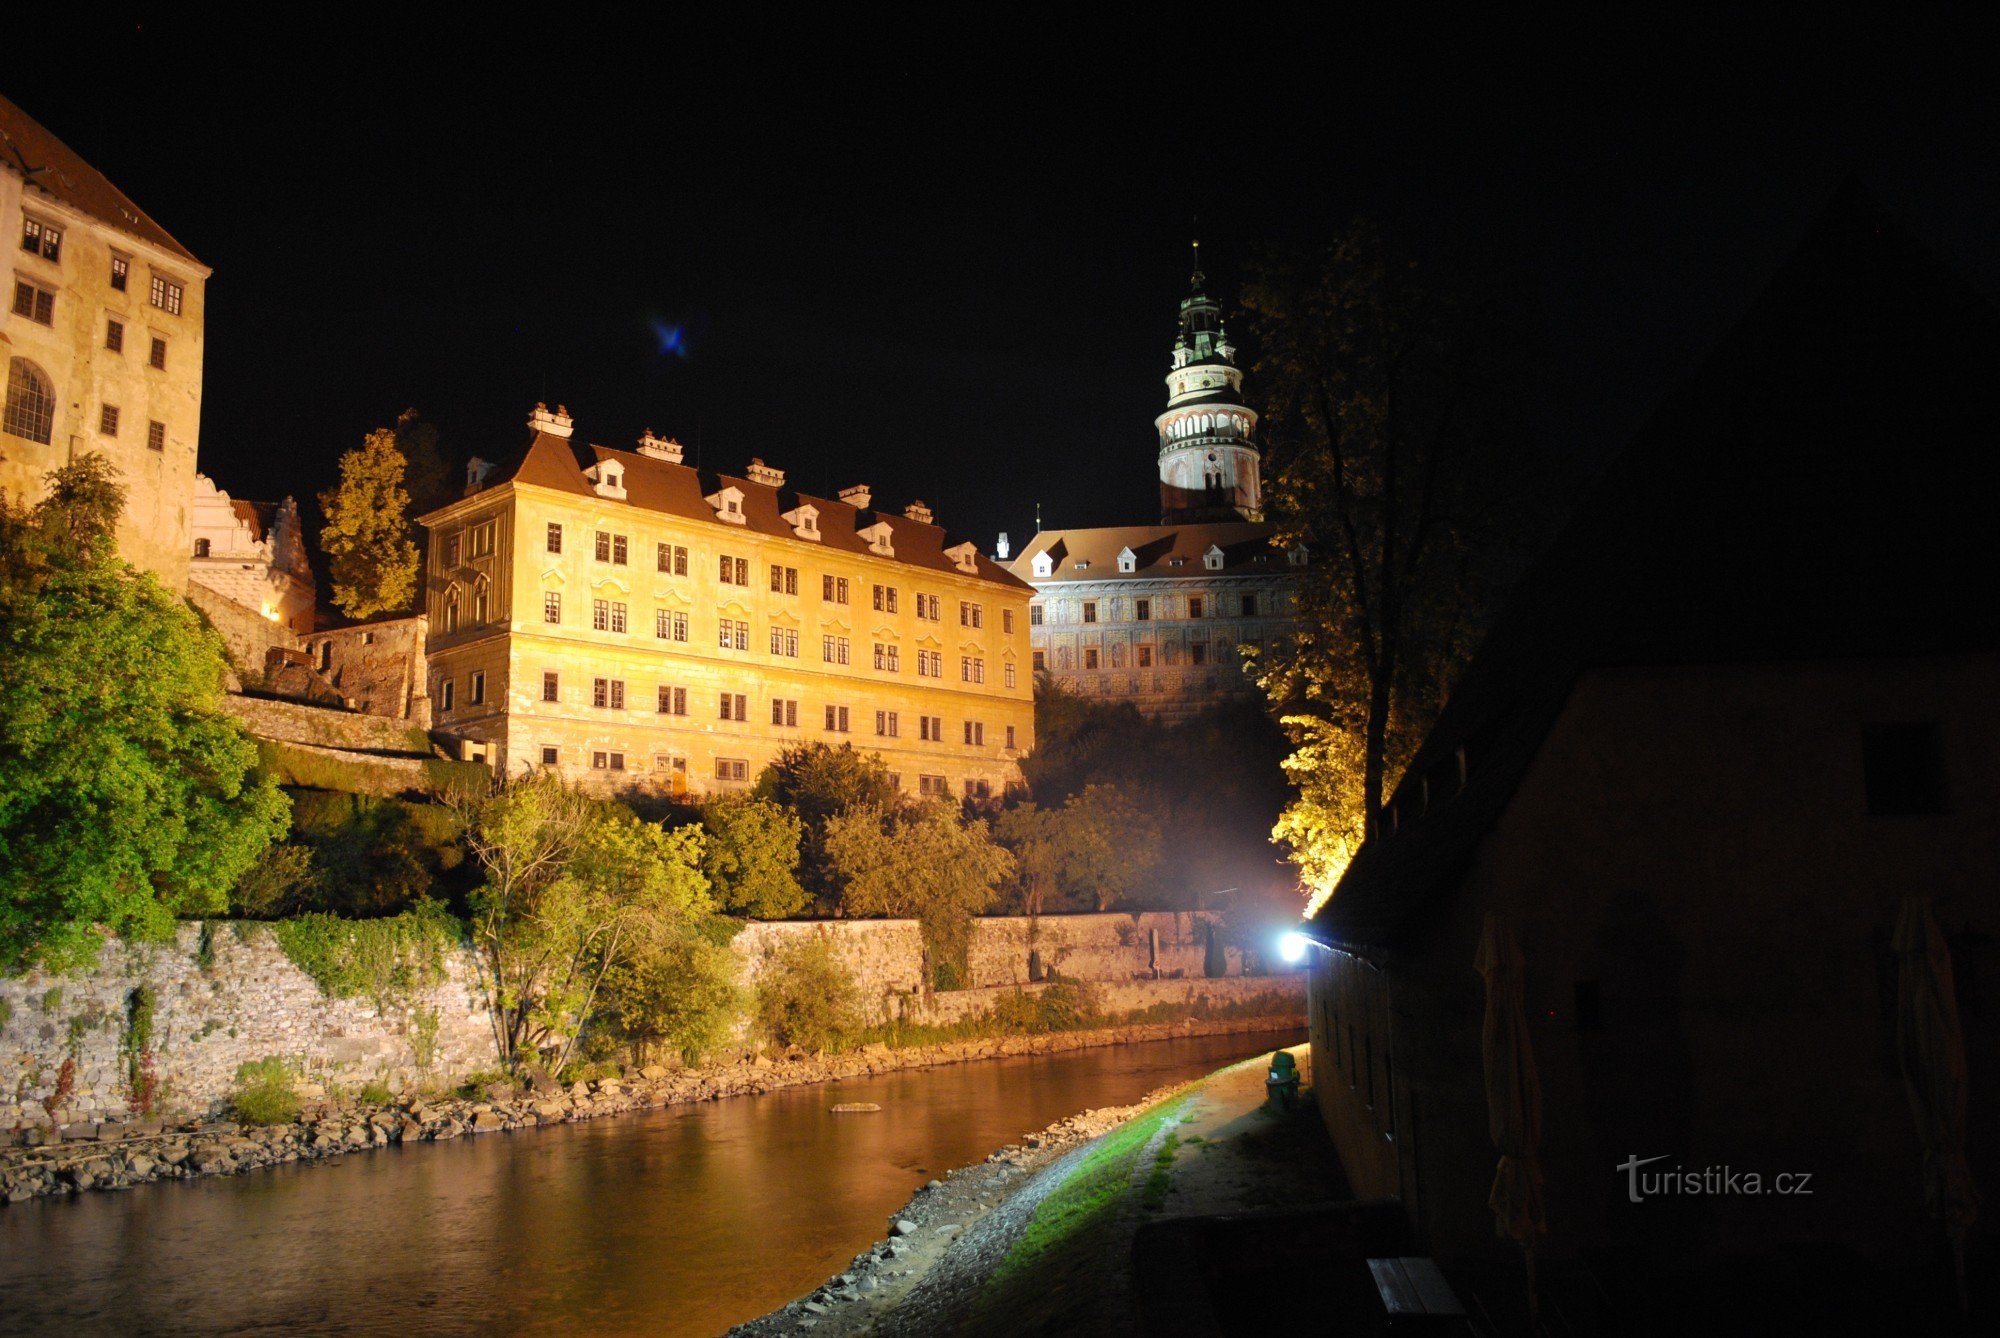 Το Český Krumlov μέσα στους τοίχους είναι όμορφο και ρομαντικό το βράδυ - ΟΜΟΡΦΟ